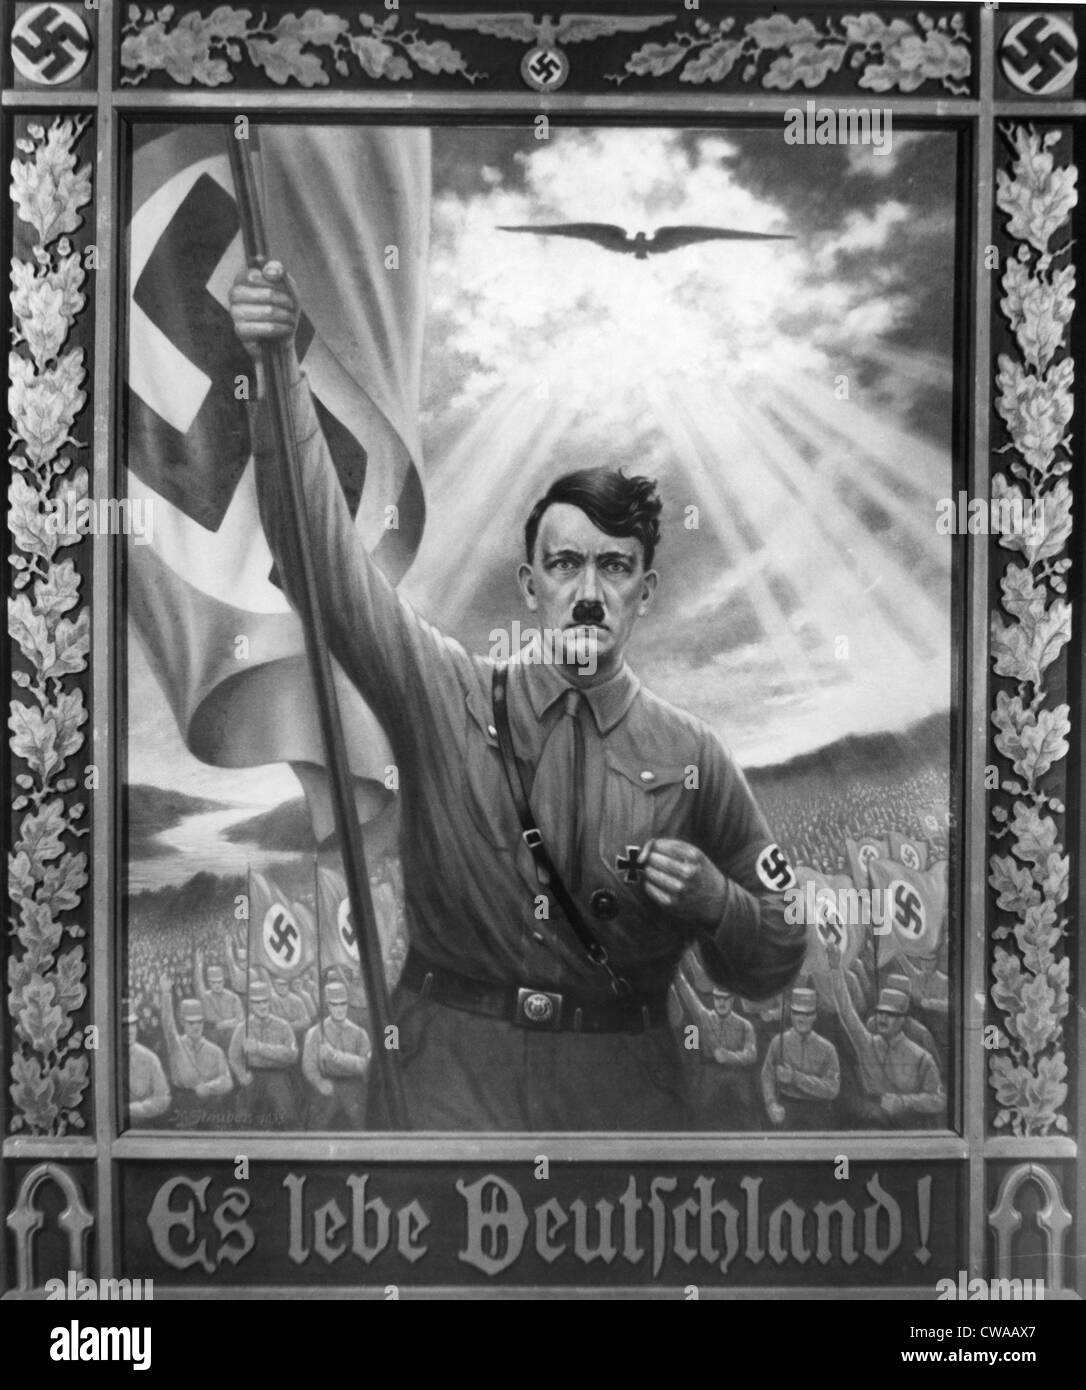 ADOLF HITLER 1933 Gemälde mit dem Titel, "Es Lebe Deutschland," zur Erinnerung an das Jahr Hitler an die Macht kam.  Everett/CSU Archive. Stockfoto